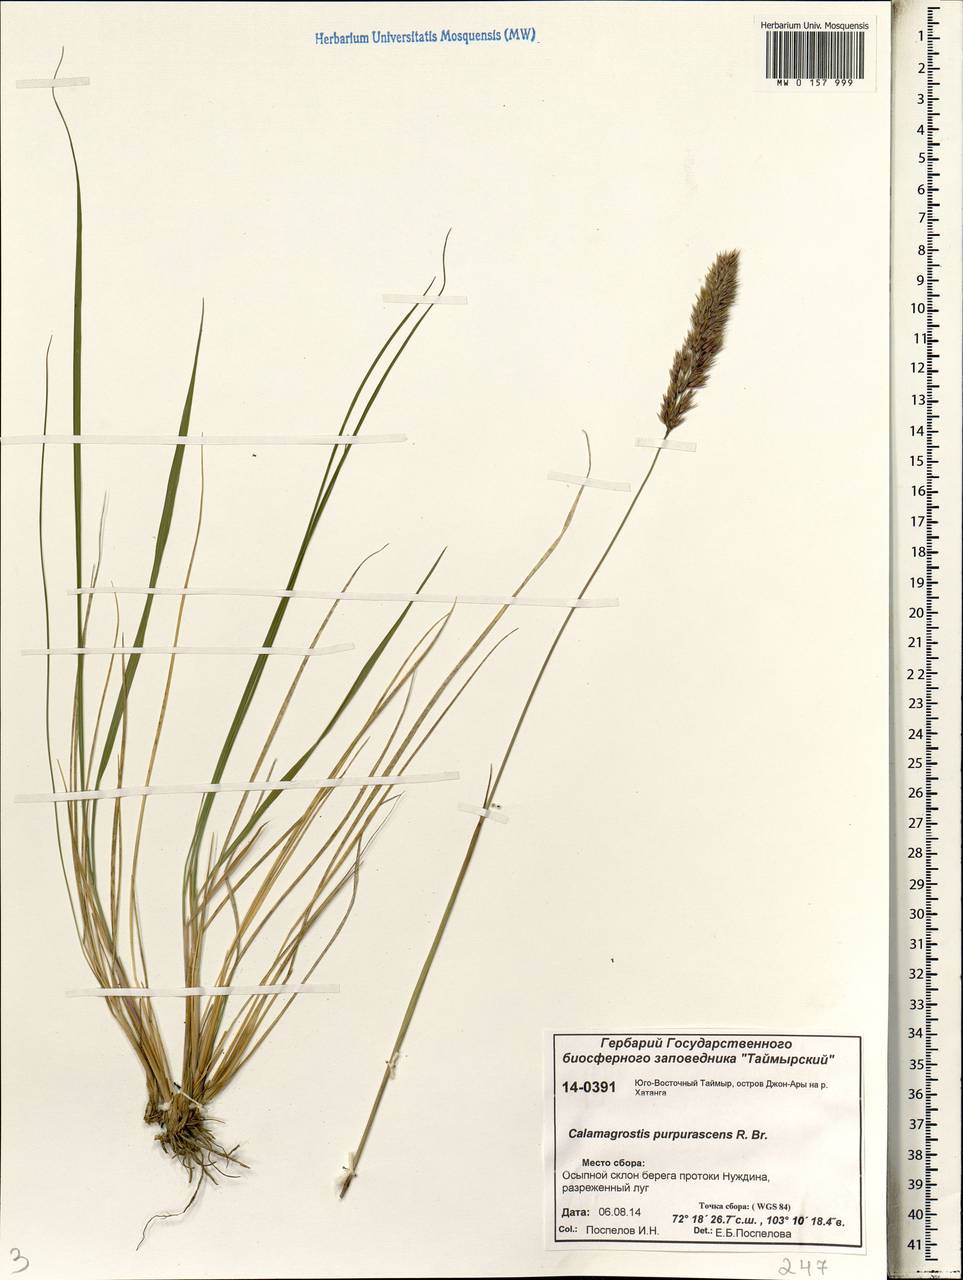 Calamagrostis purpurascens R.Br., Siberia, Central Siberia (S3) (Russia)